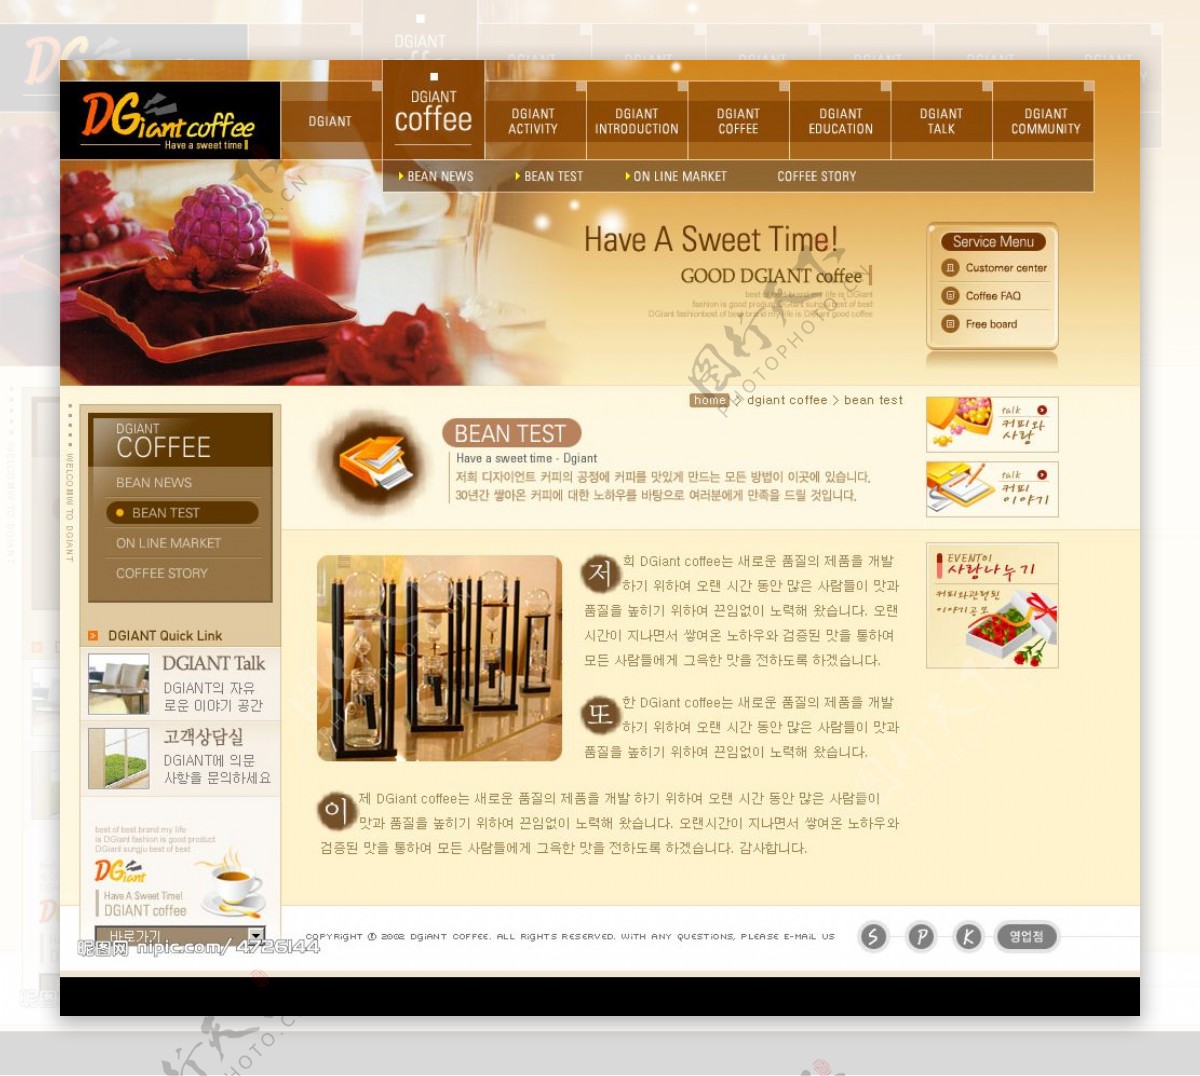 网页素材PSD韩国图片